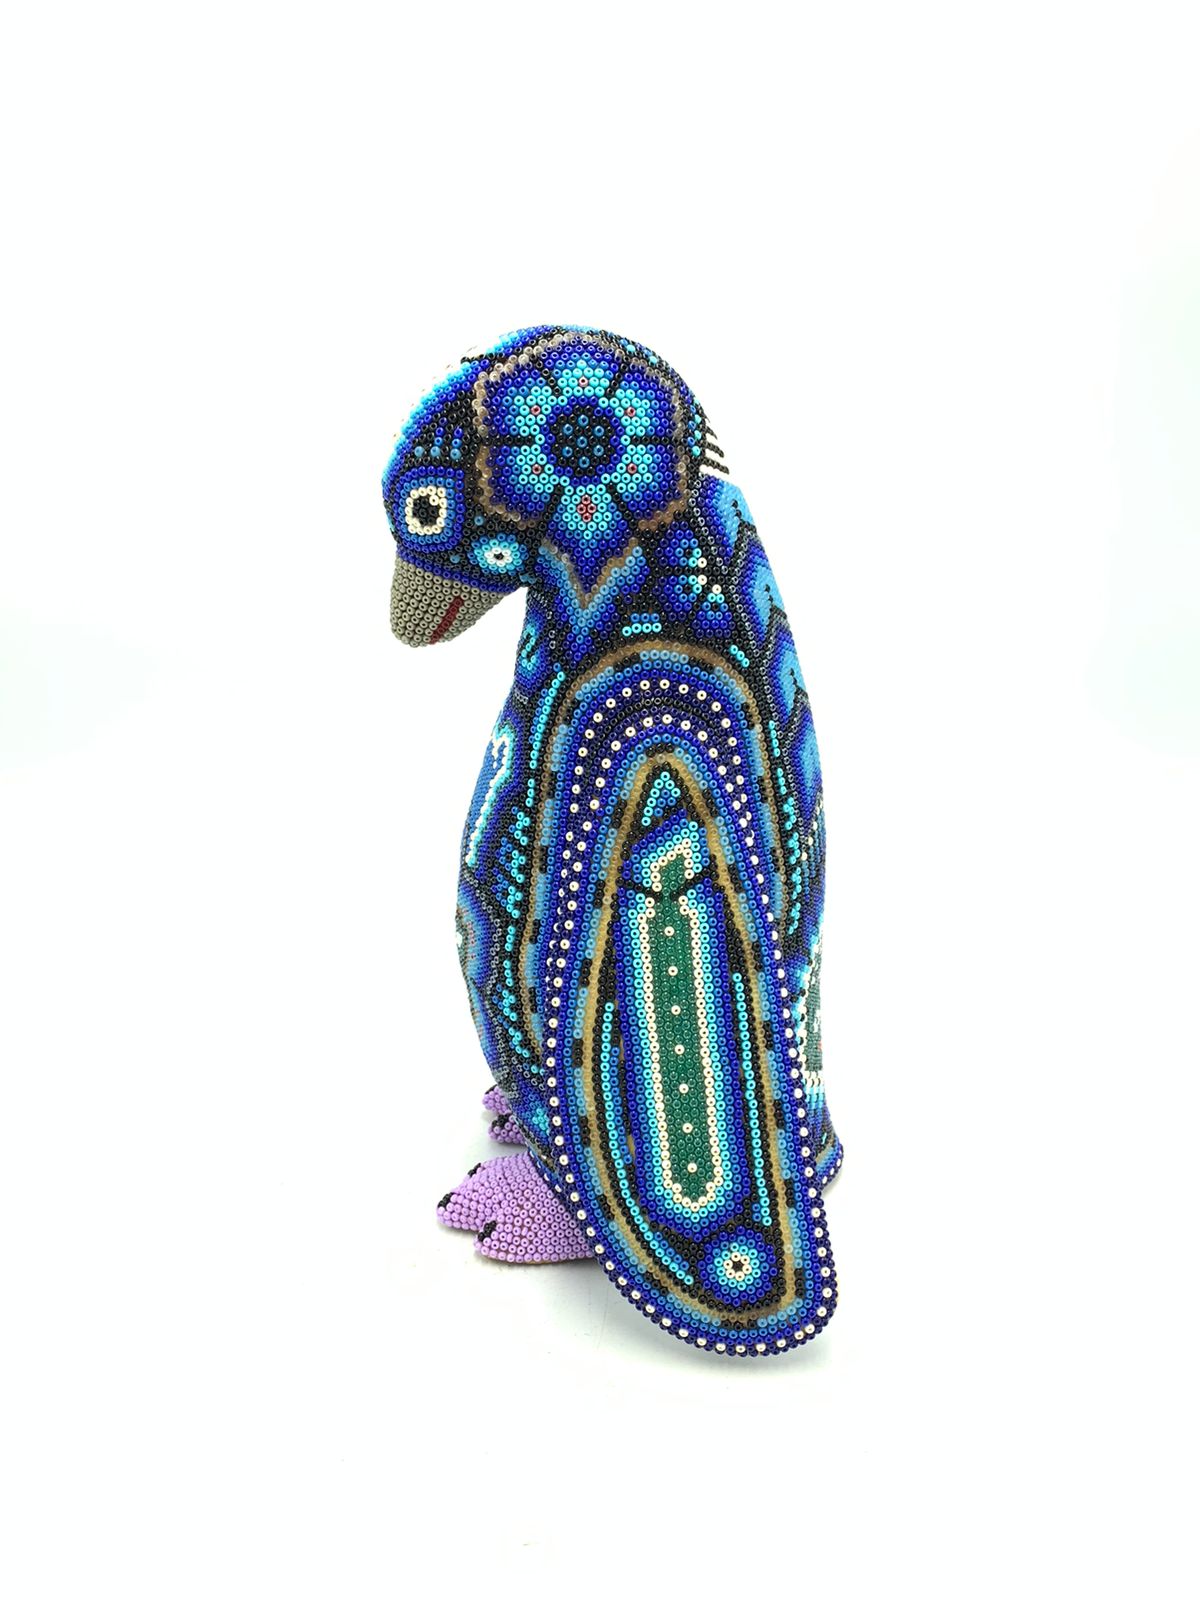 Mexican Folk Art Huichol Beaded Penguin by Isandro Villa Lopez PP5761